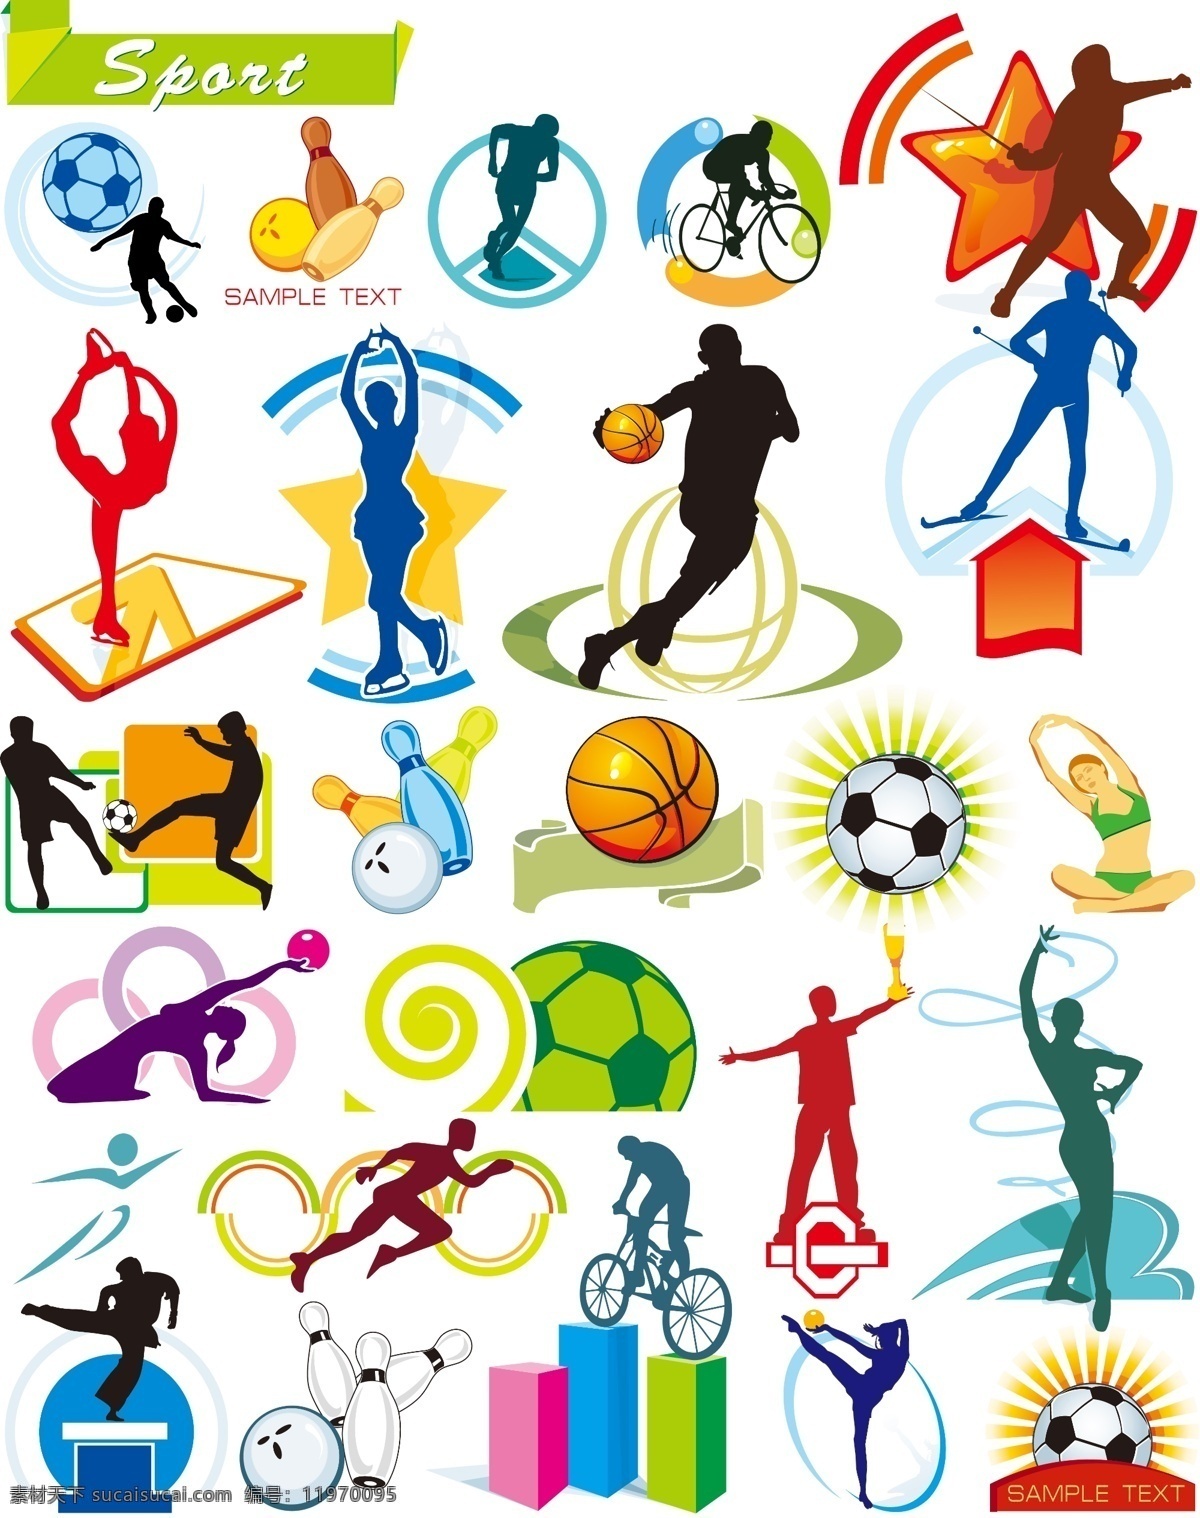 运动人物 卡通 运动员 篮球运动 击剑运动 自行车 足球 保龄球 跆拳道 滑雪 溜冰 体操 人物图库 职业人物